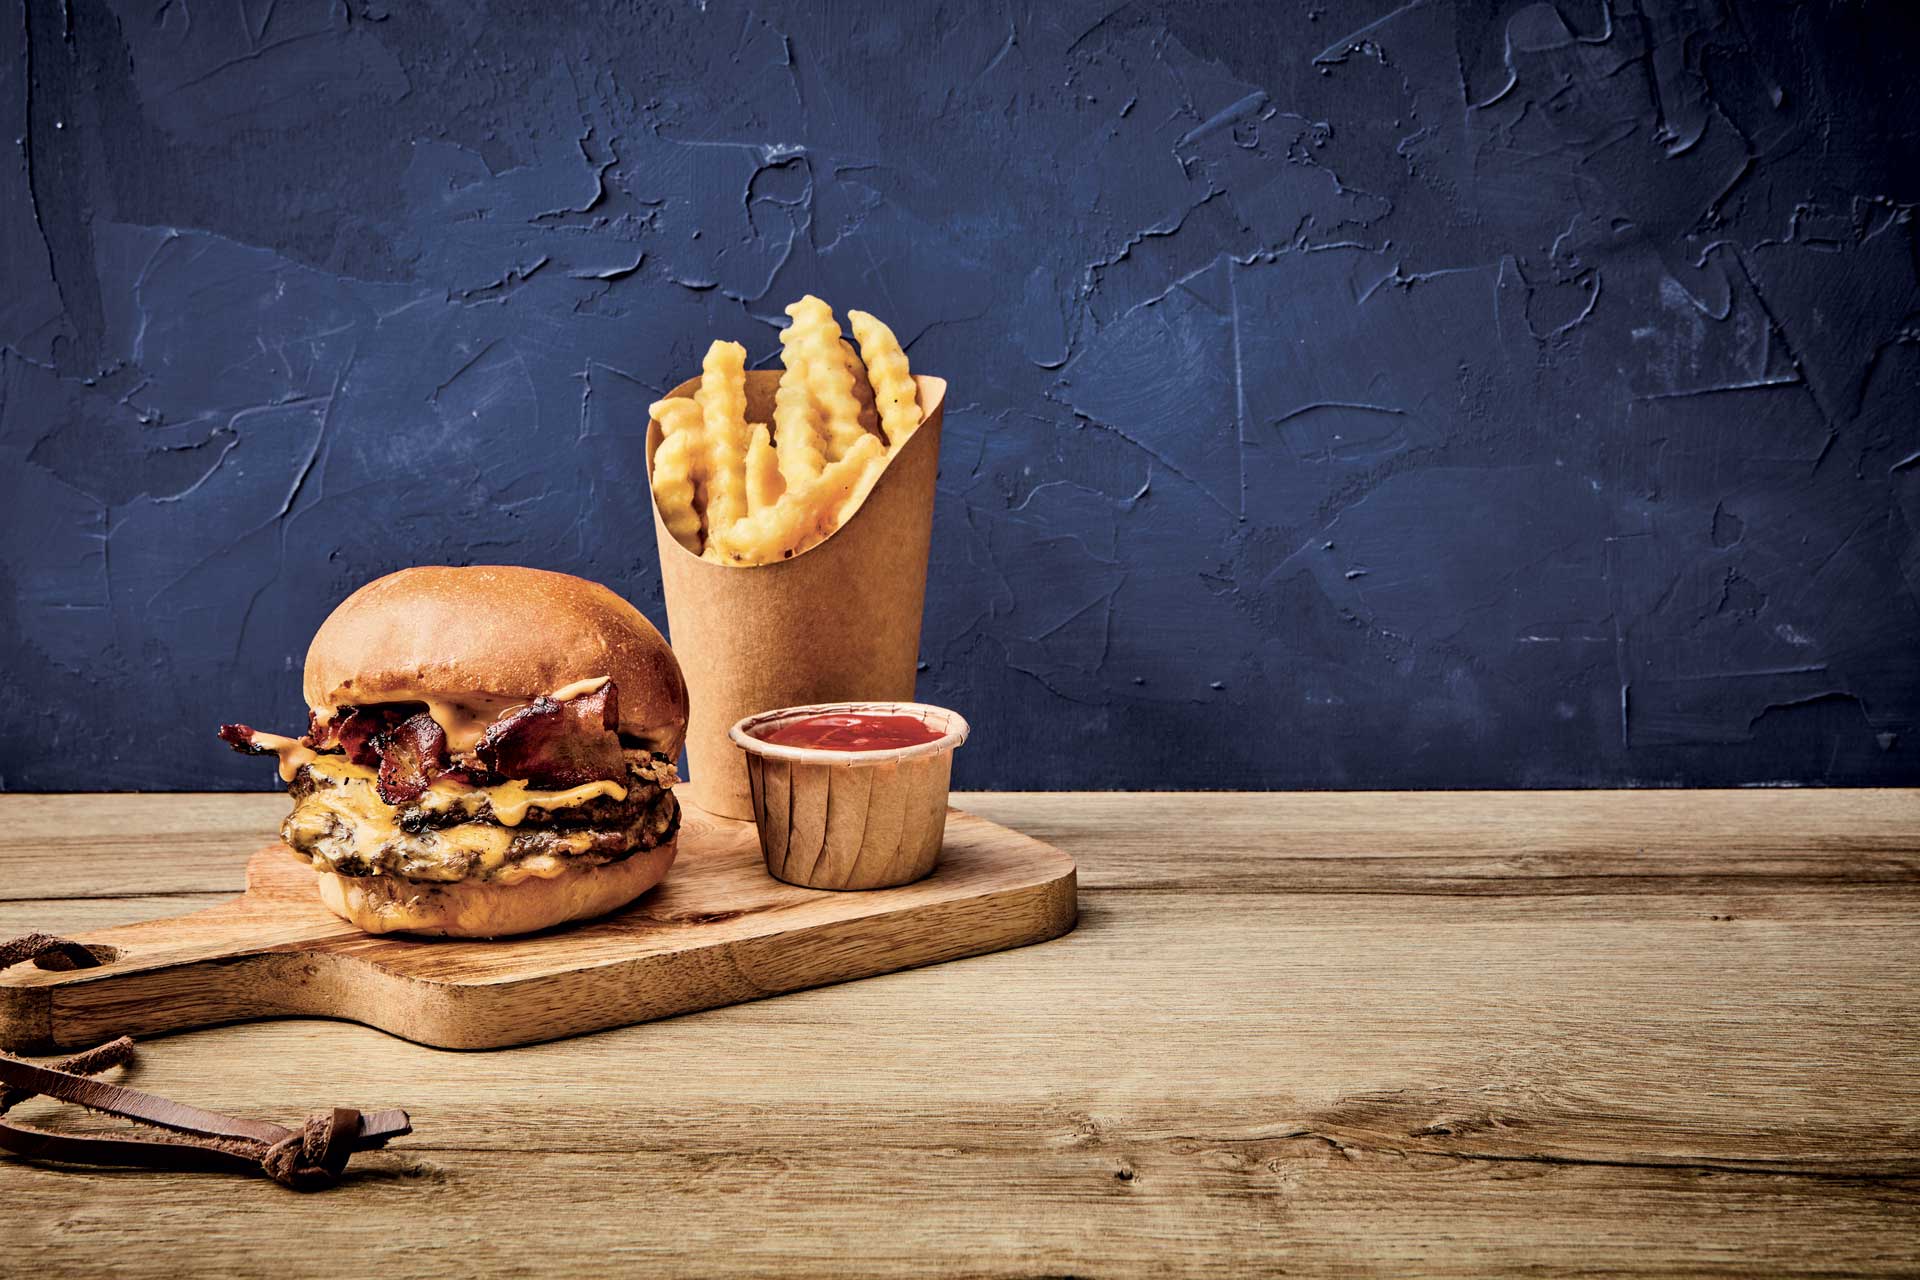 Burger au bacon et au bleu (Bleu Cheese and Bacon Burger) - La